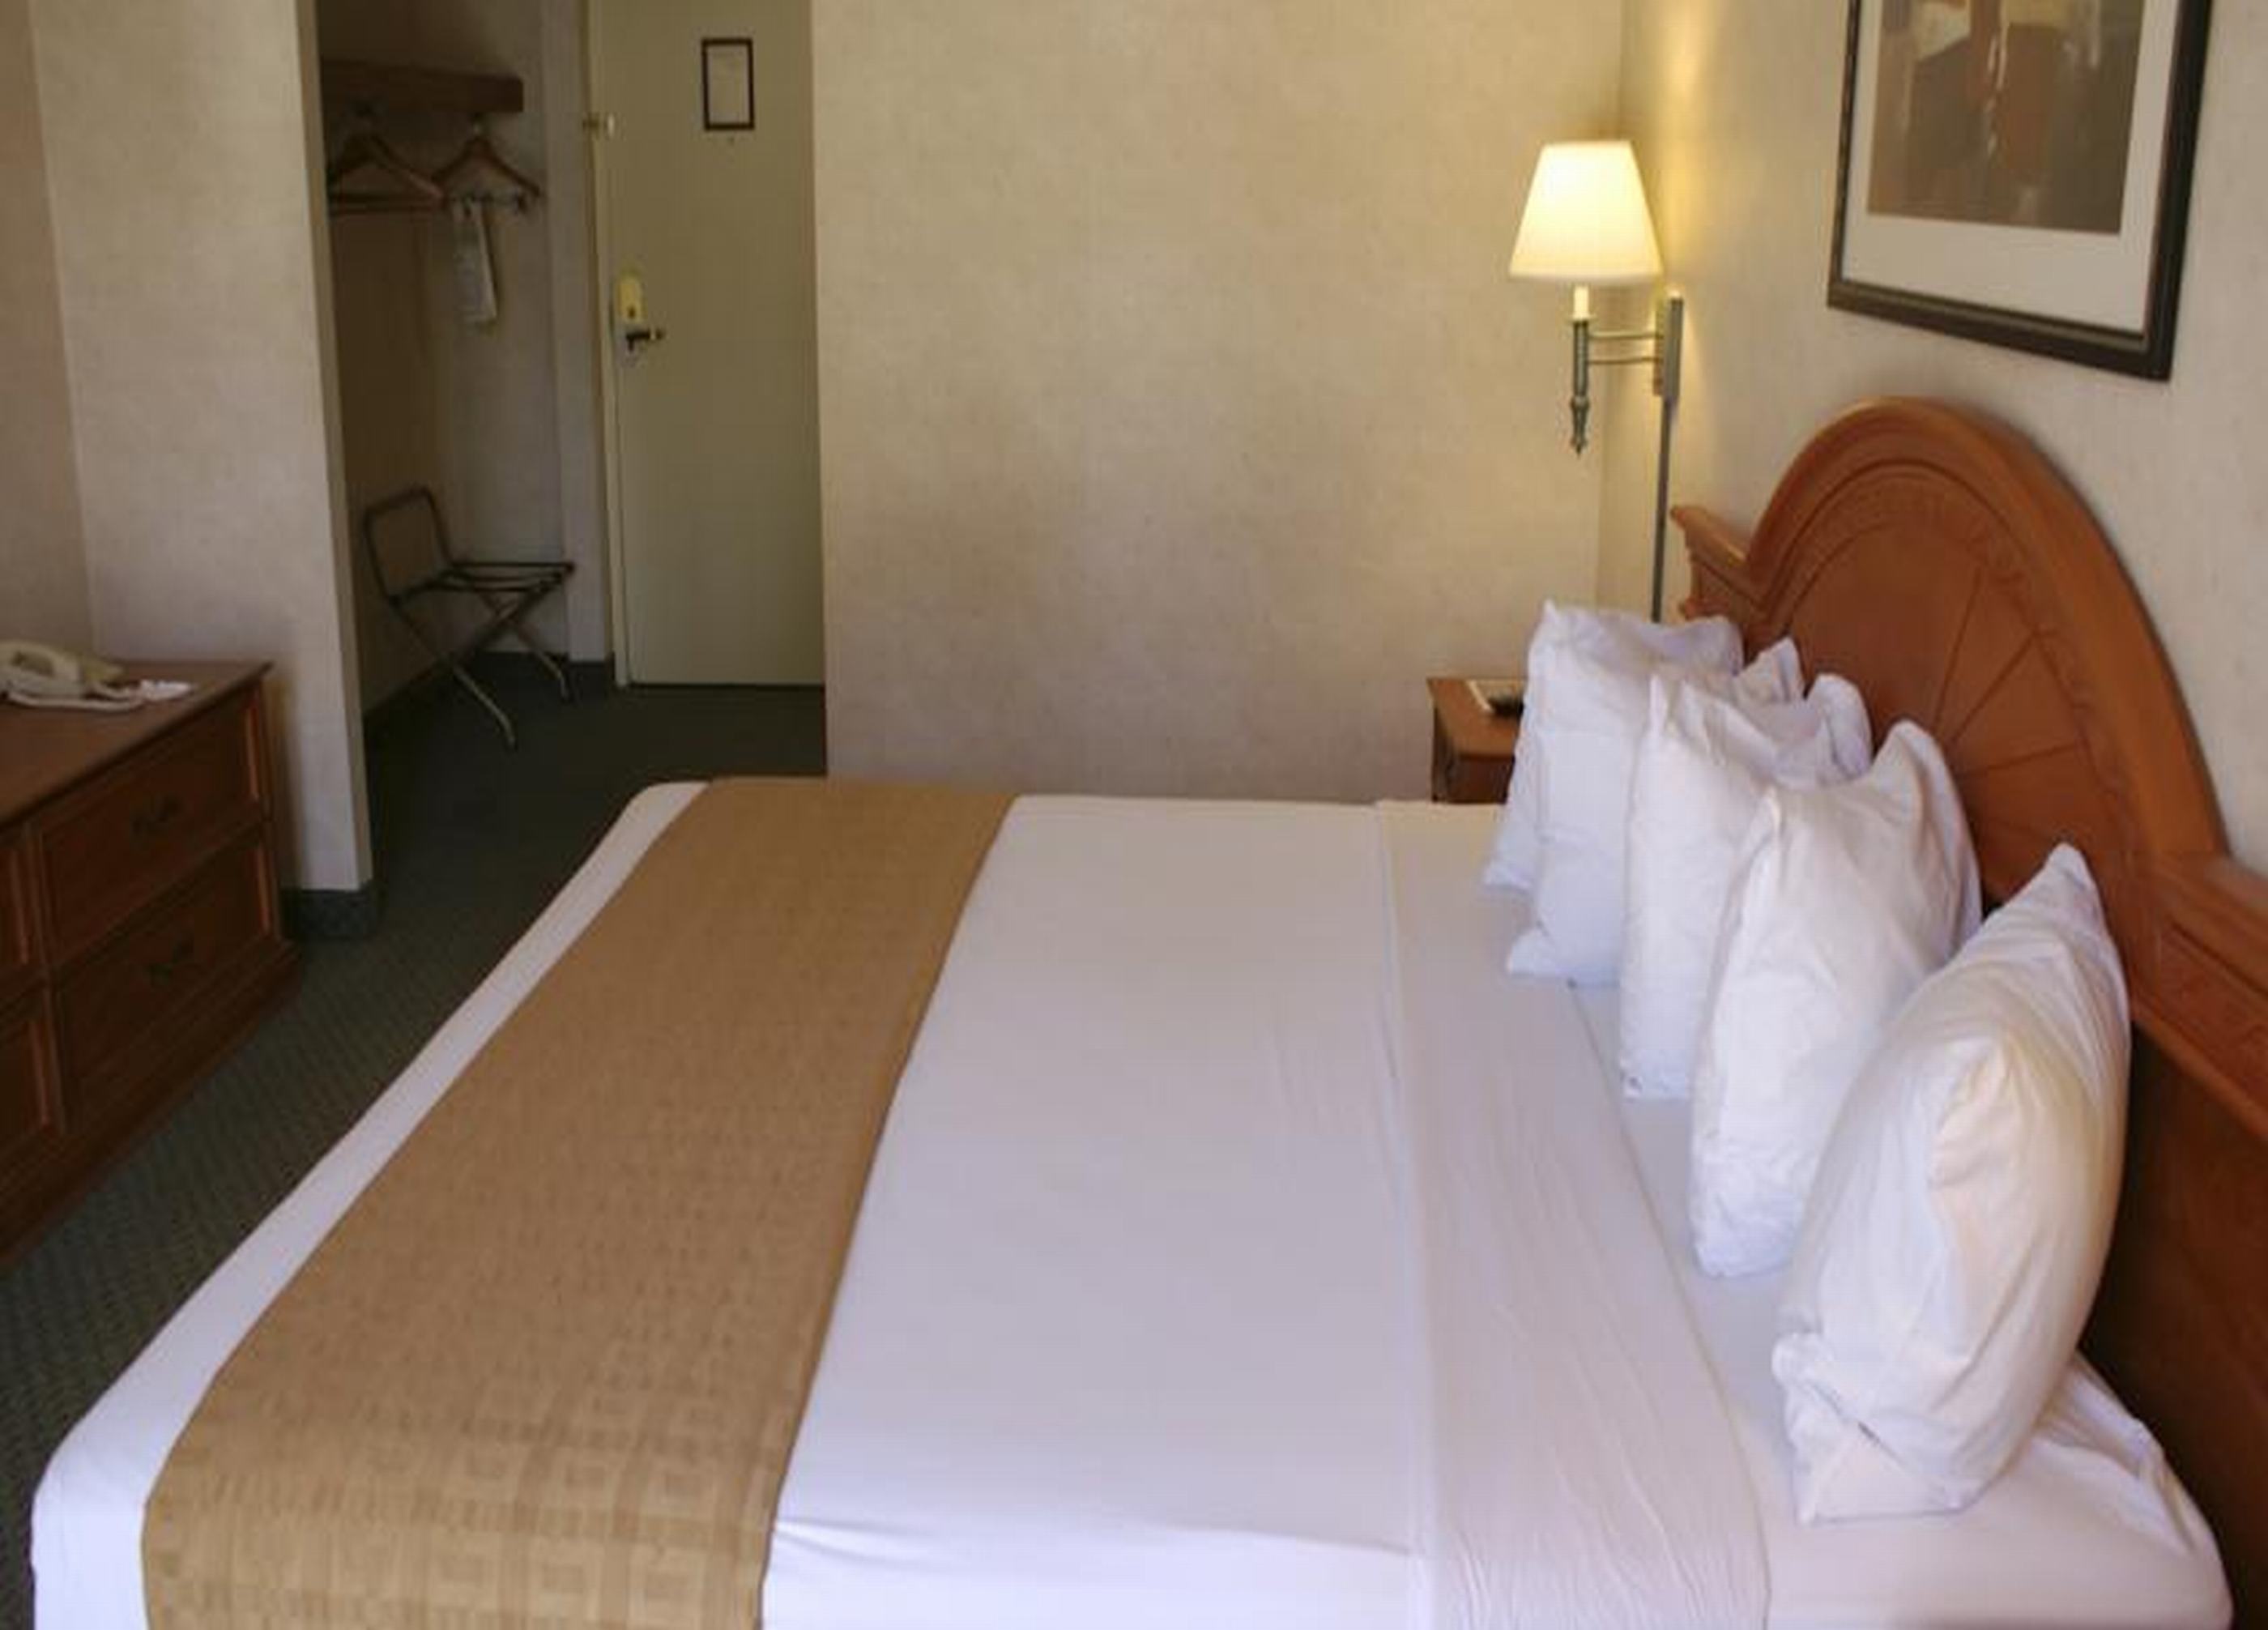 Clarion Hotel Anaheim Resort